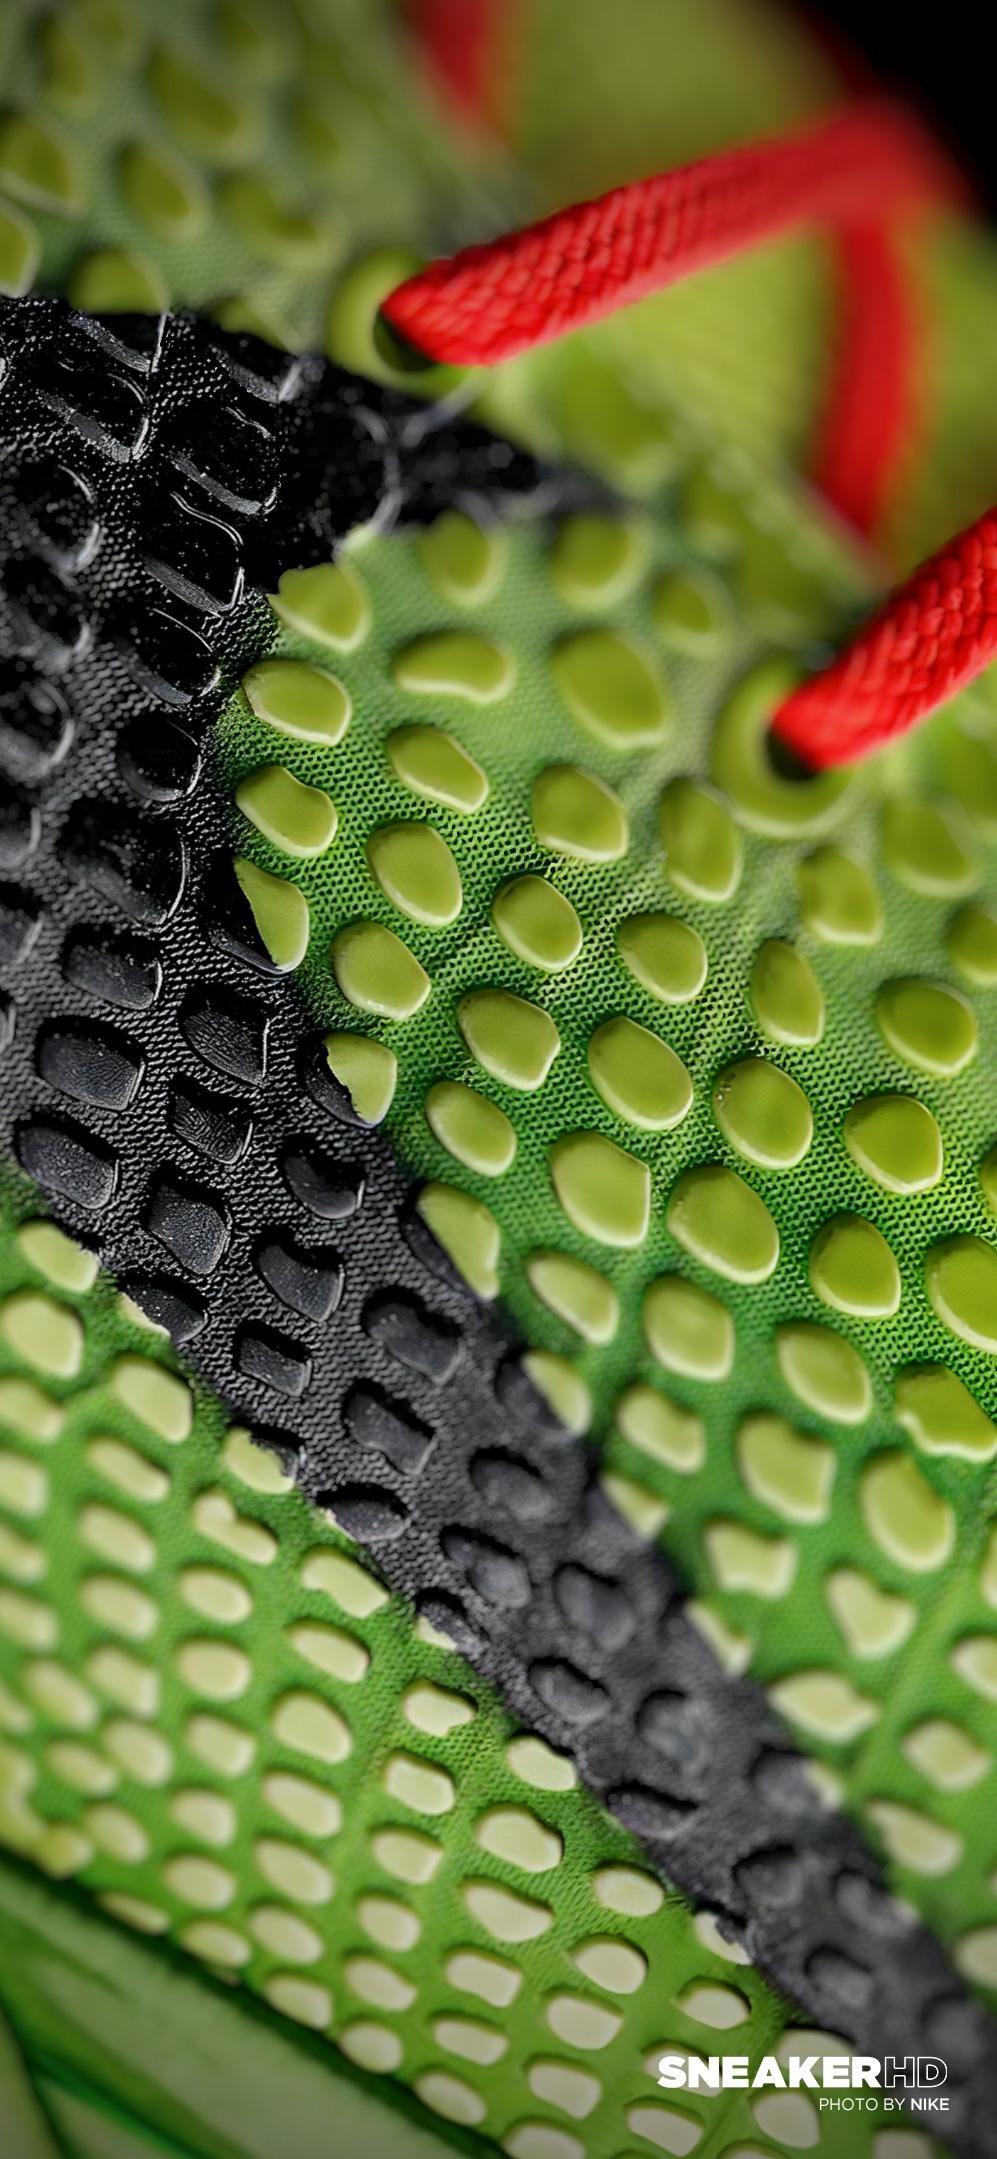 SneakerHDwallpaper Your Favorite Sneakers In 4k Retina